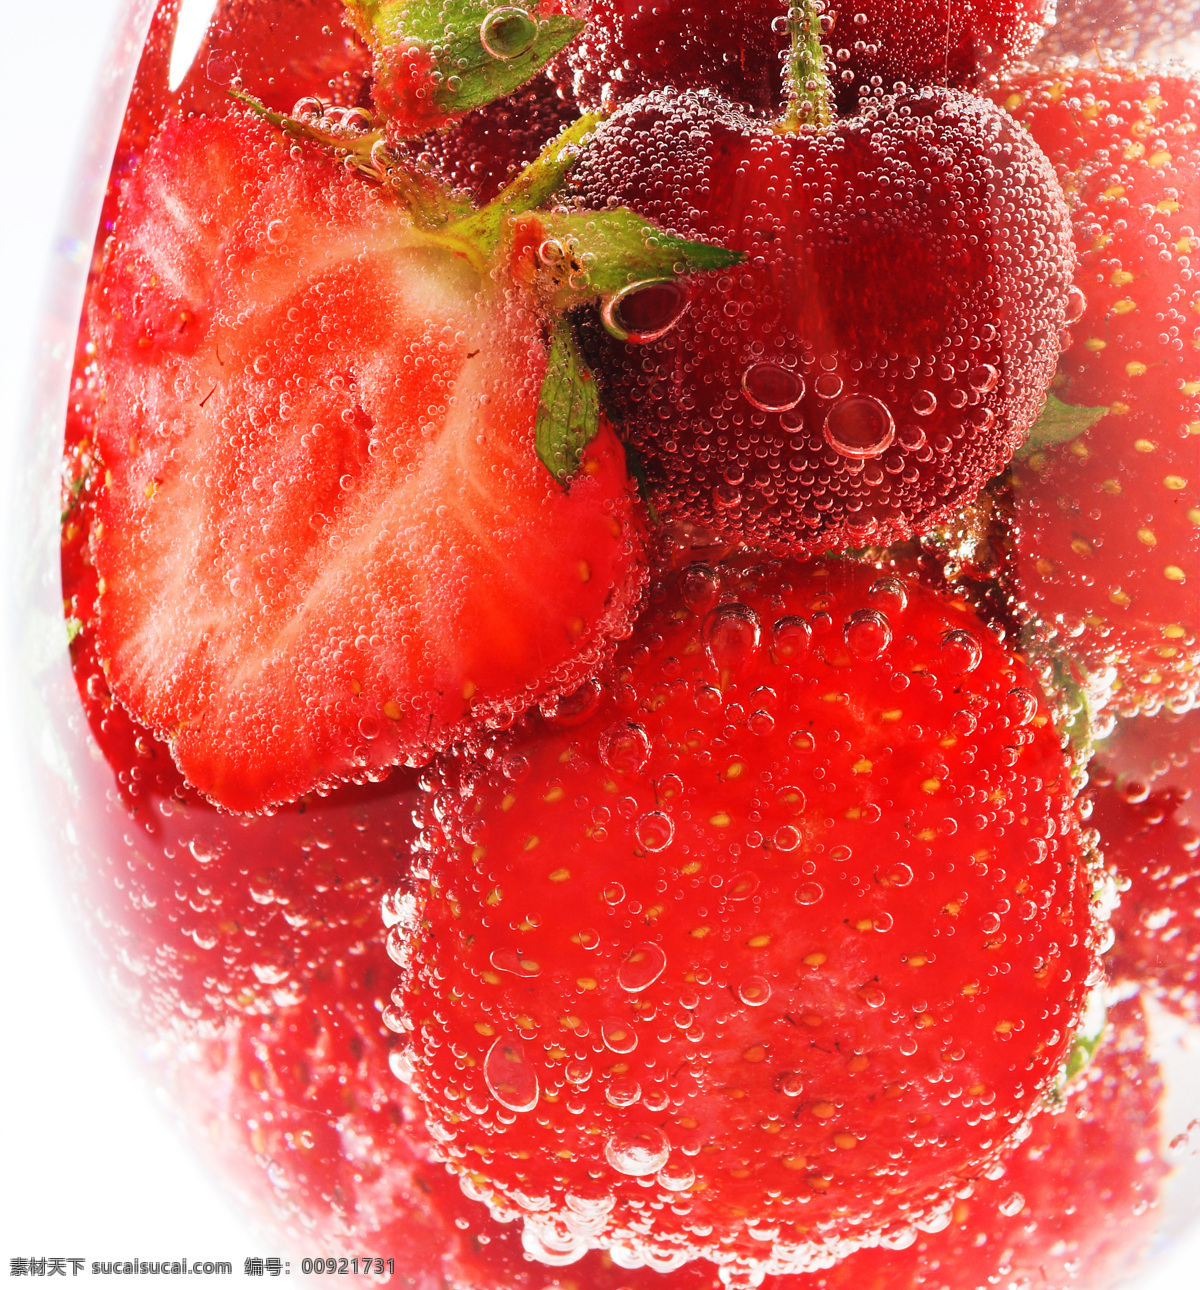 草莓 动感 涟漪 生物世界 水滴 水果 水珠 设计素材 模板下载 主题 psd源文件